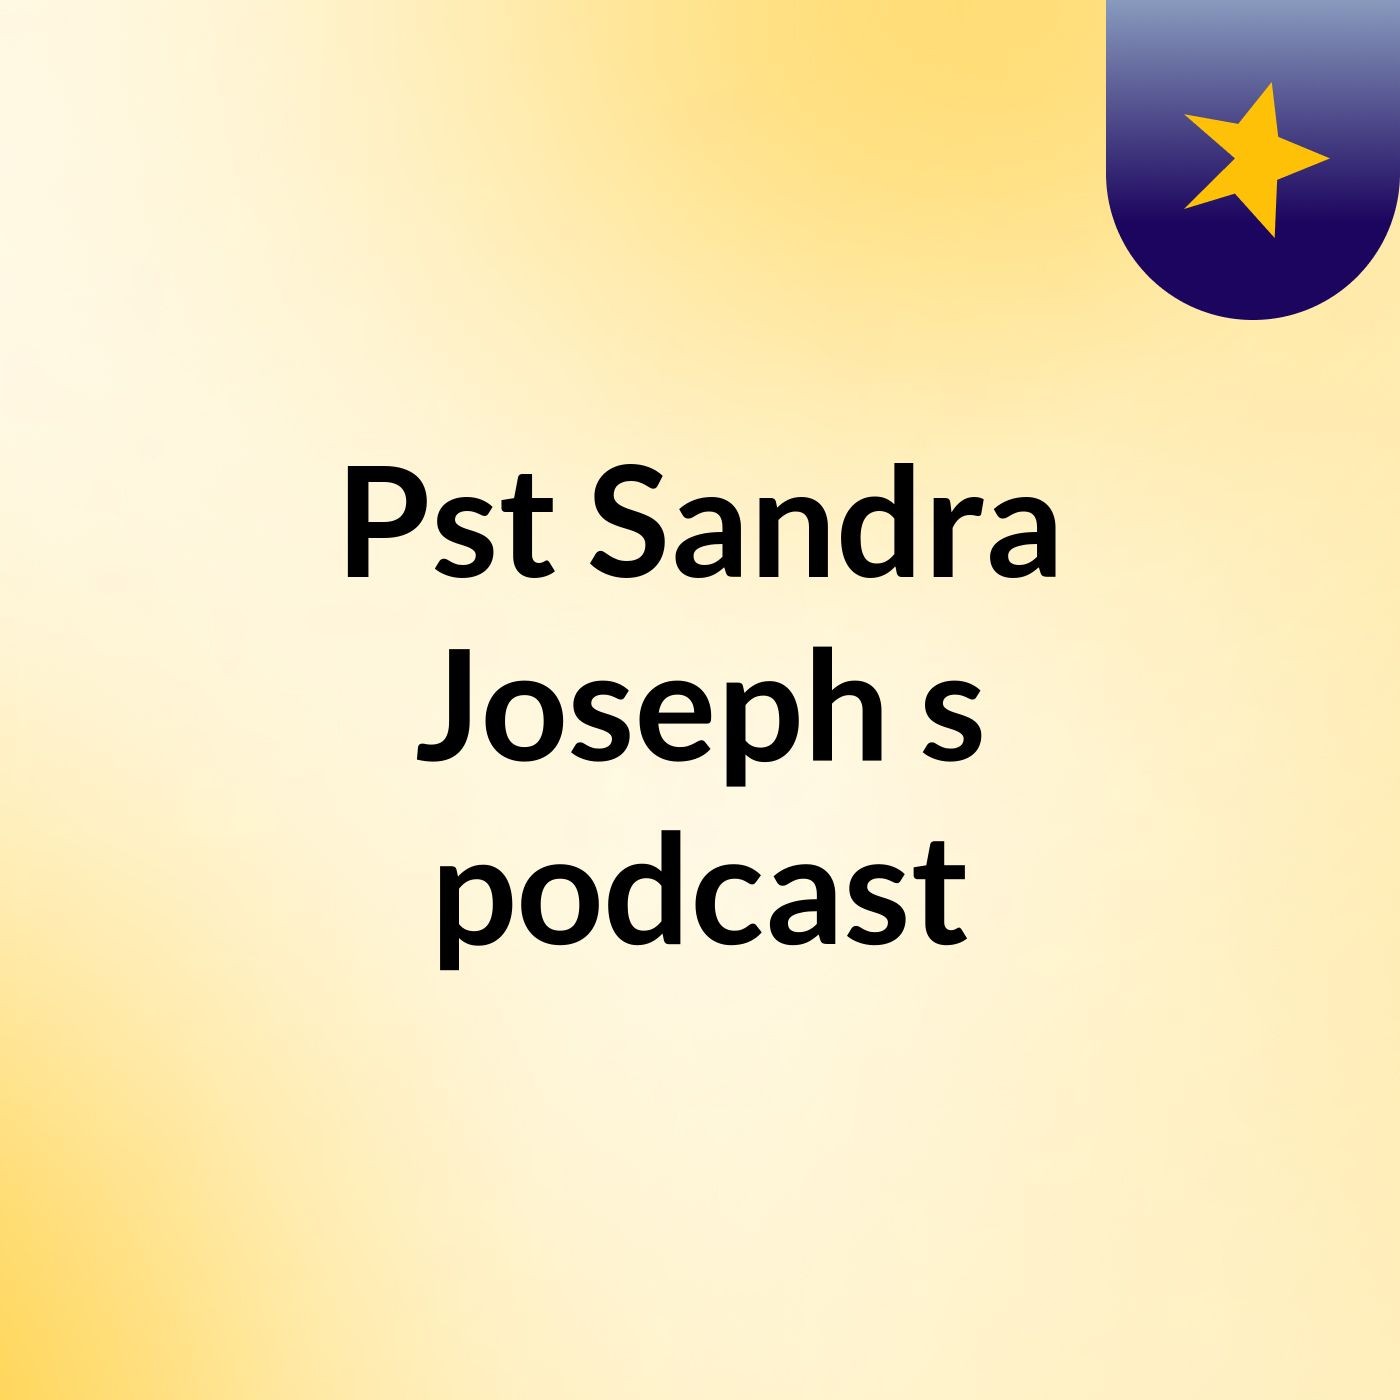 Pst Sandra Joseph's podcast